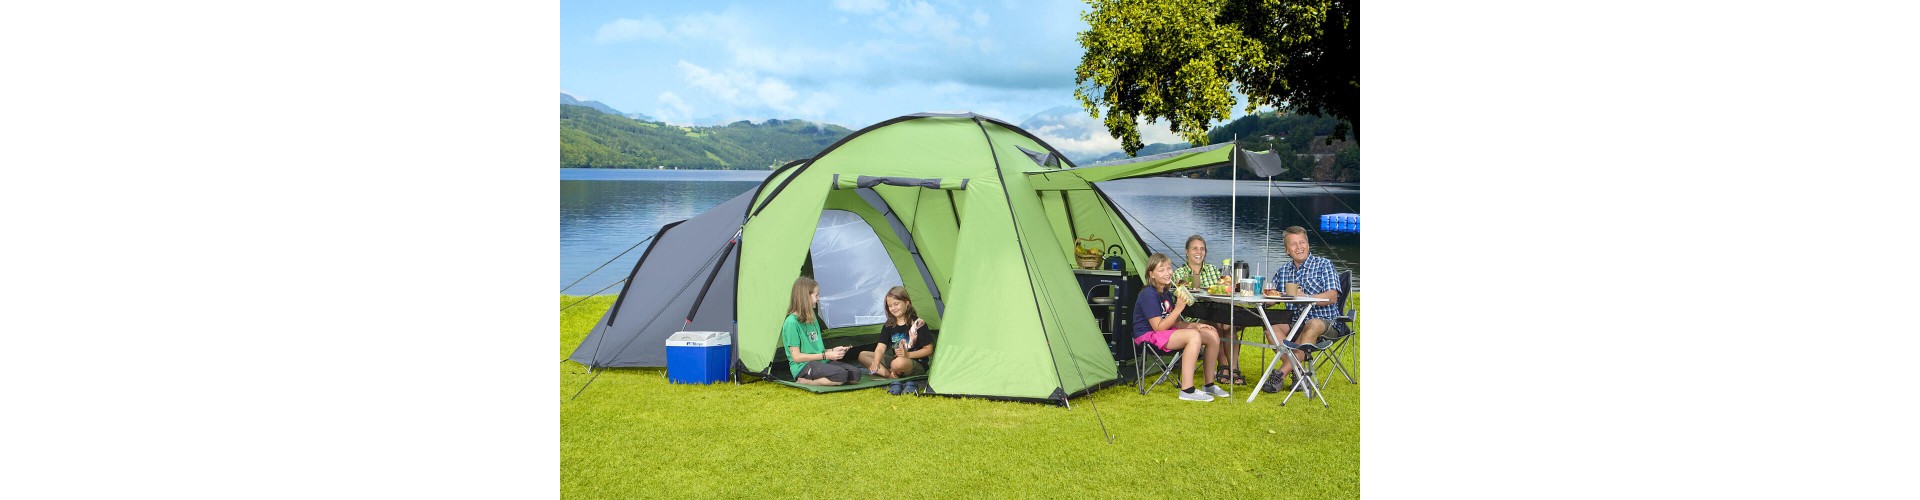 Как выбрать качественную и удобную палатку для кемпинга